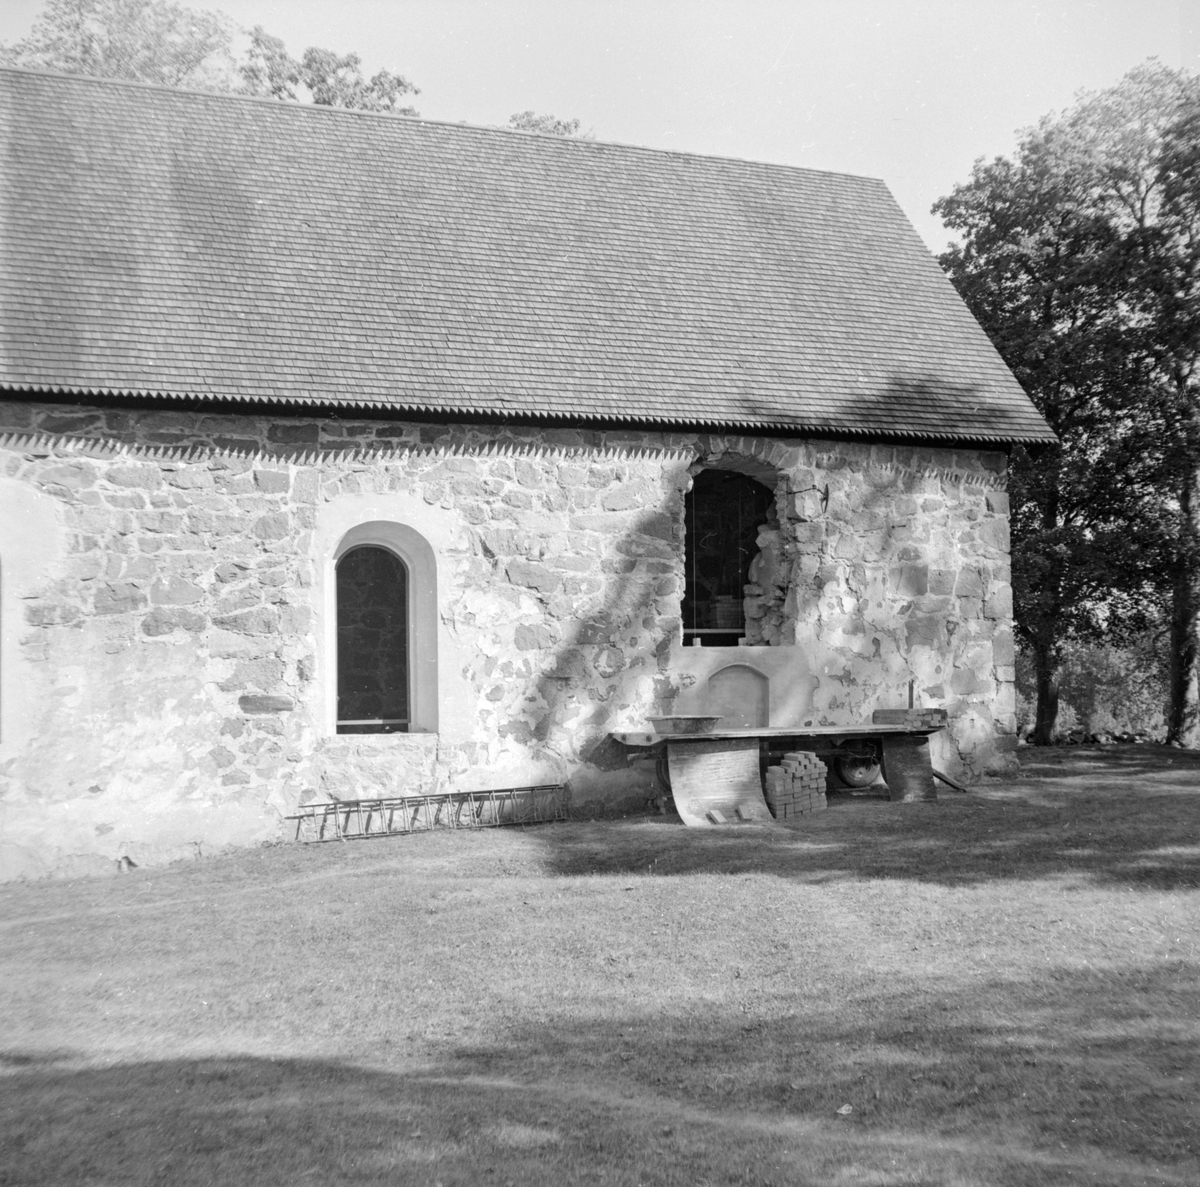 Under ingenjör Ture Jangviks ledning genomfördes under åren 1976-78 en genomgripande restaurering av Hägerstads gamla kyrka. Här två nedslag från insatsens initiala skede 1976.